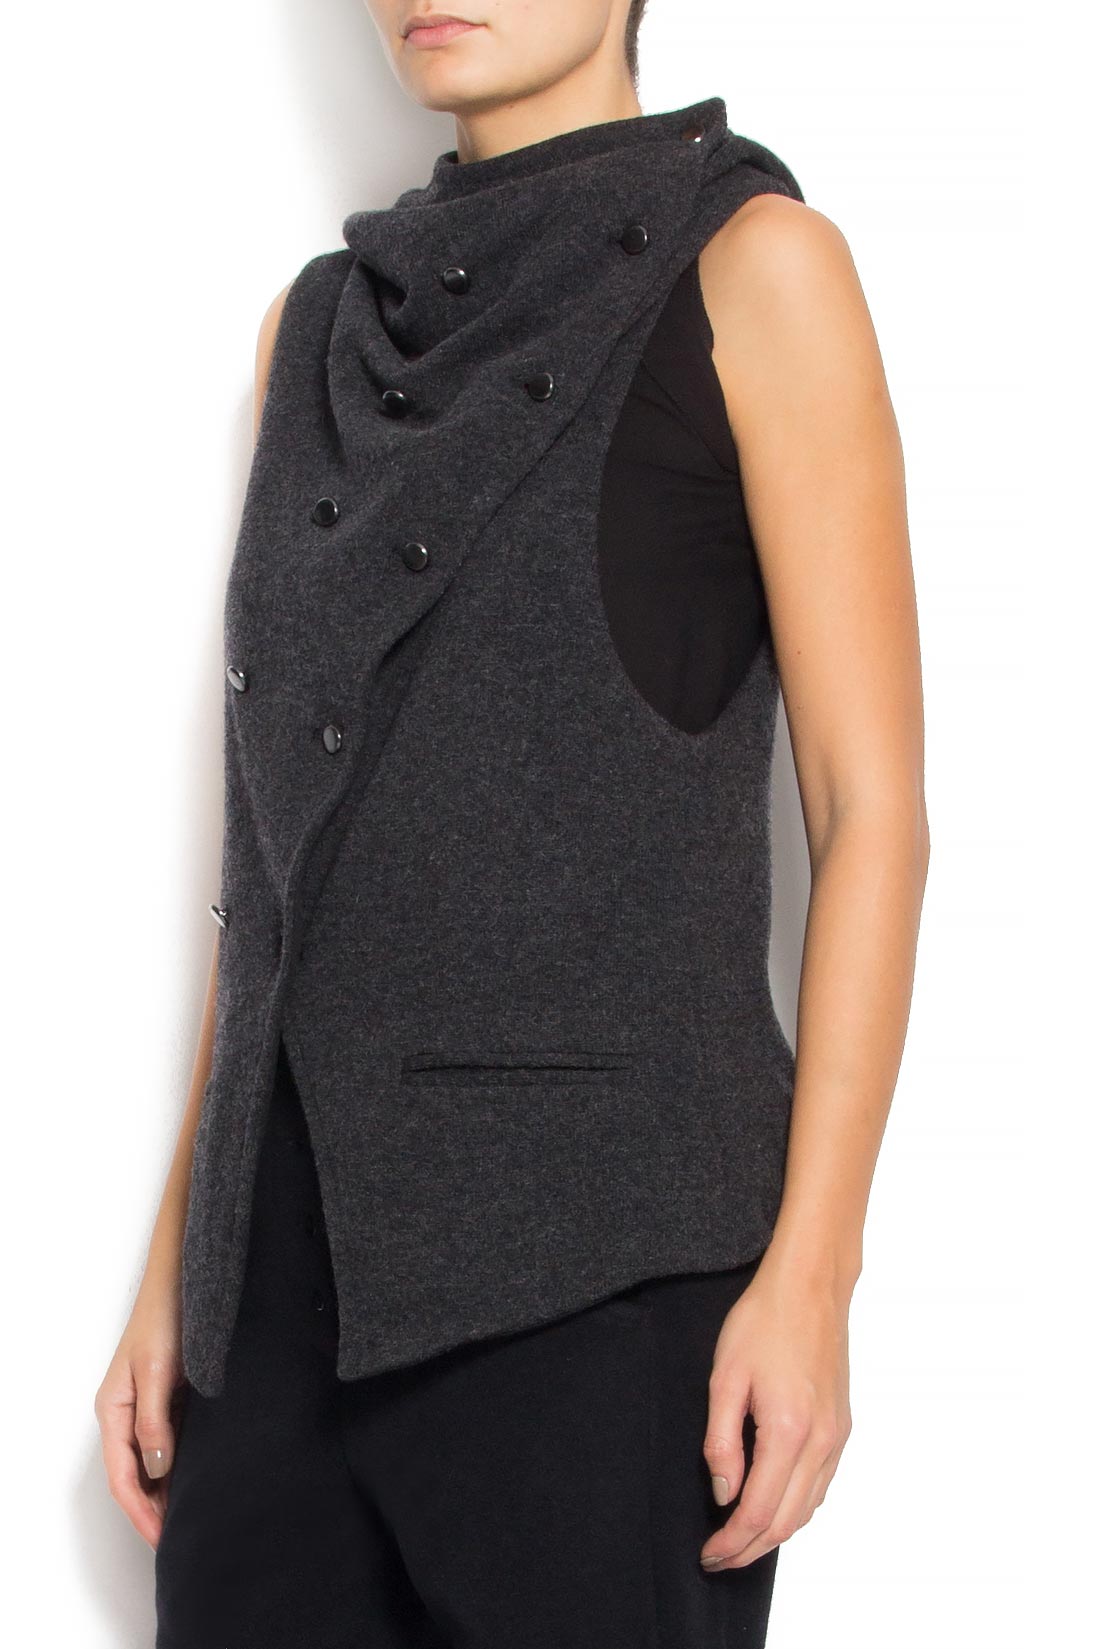 'Messy Vest' double-faced wool-blend vest Studio Cabal image 1